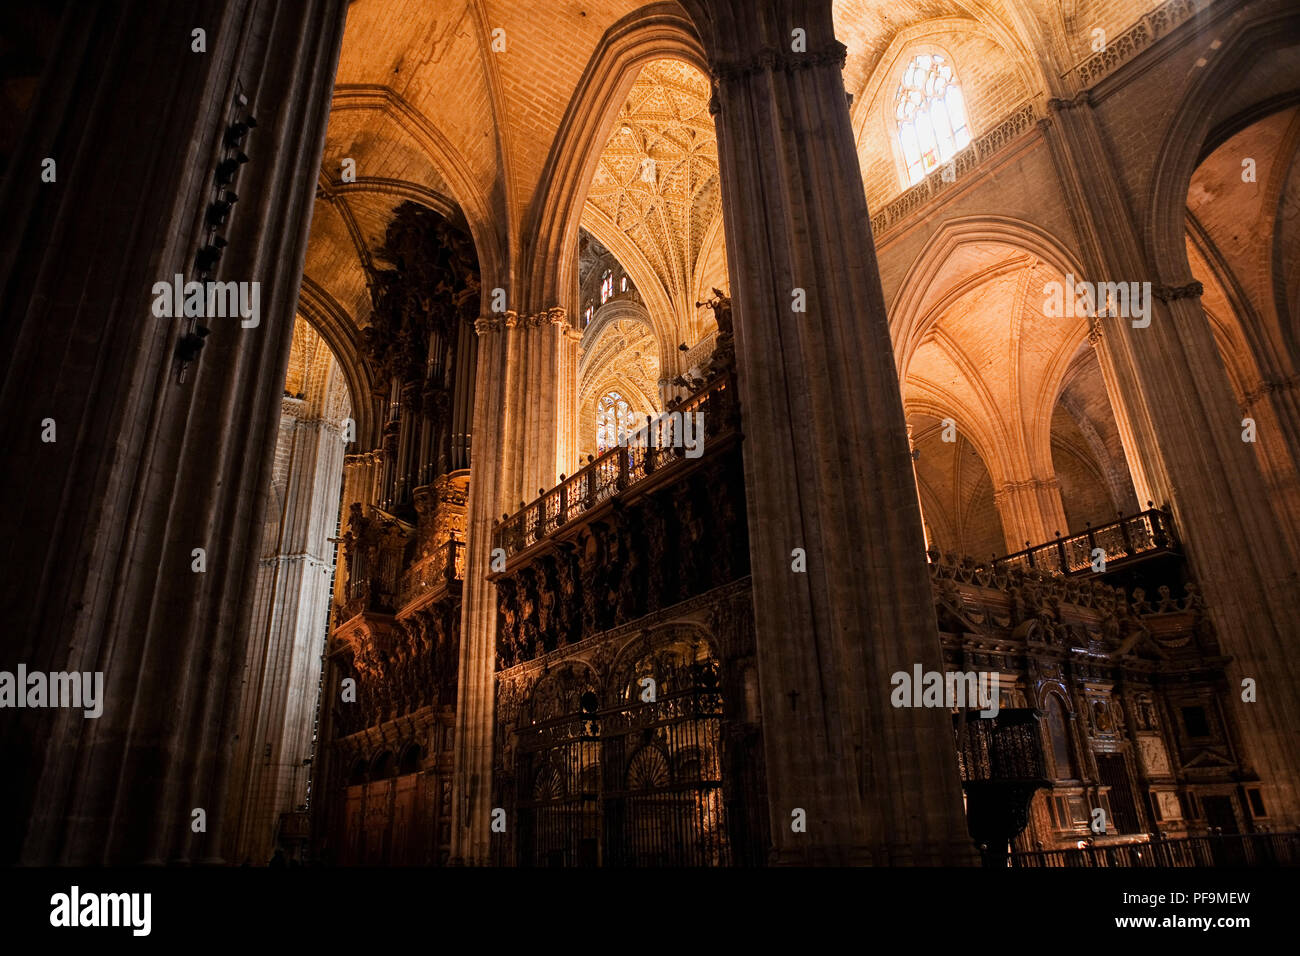 Chor und Orgel, Catedral de Santa María de la Sede, Sevilla, Spanien. Sevilla Dom ist die größte gotische Kirche der Welt Stockfoto